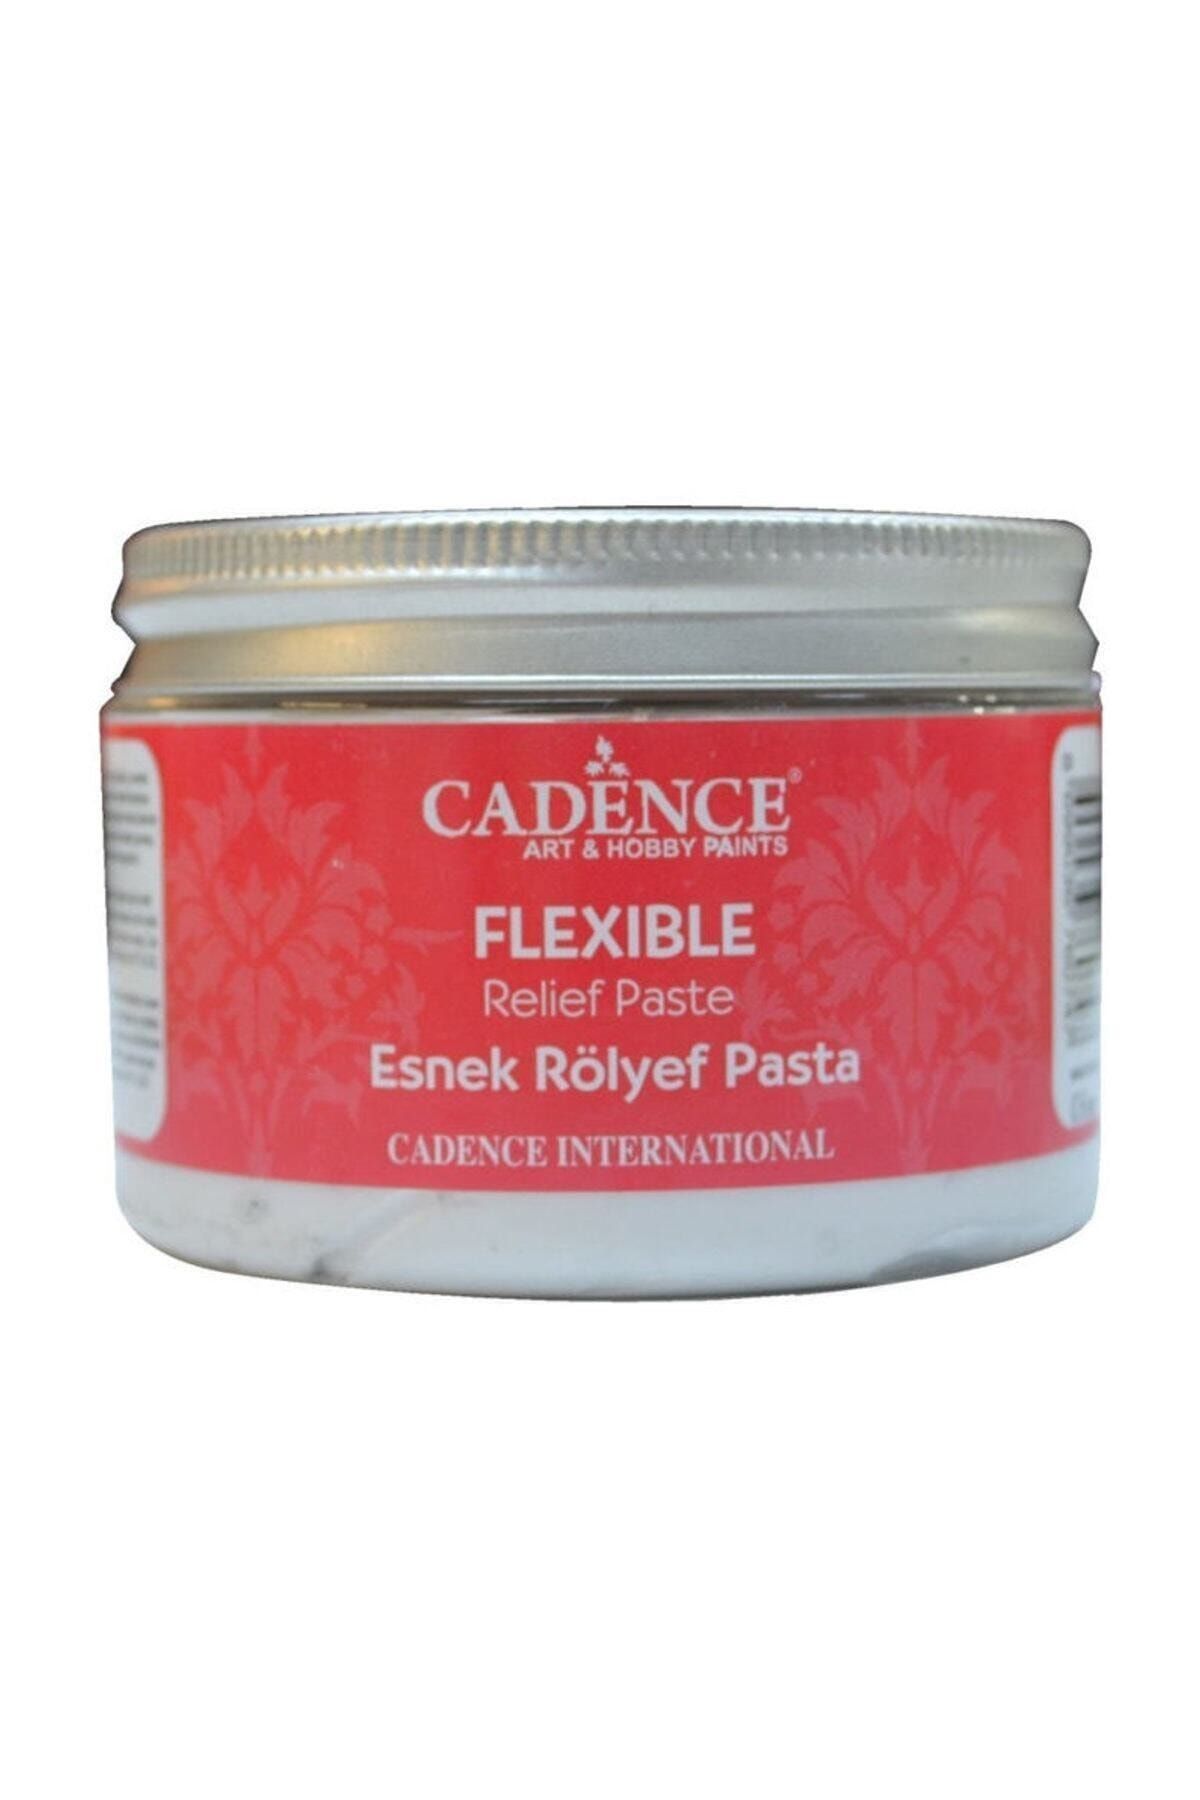 Cadence Esnek Rölyef Pasta (Flexible) 150 ml.